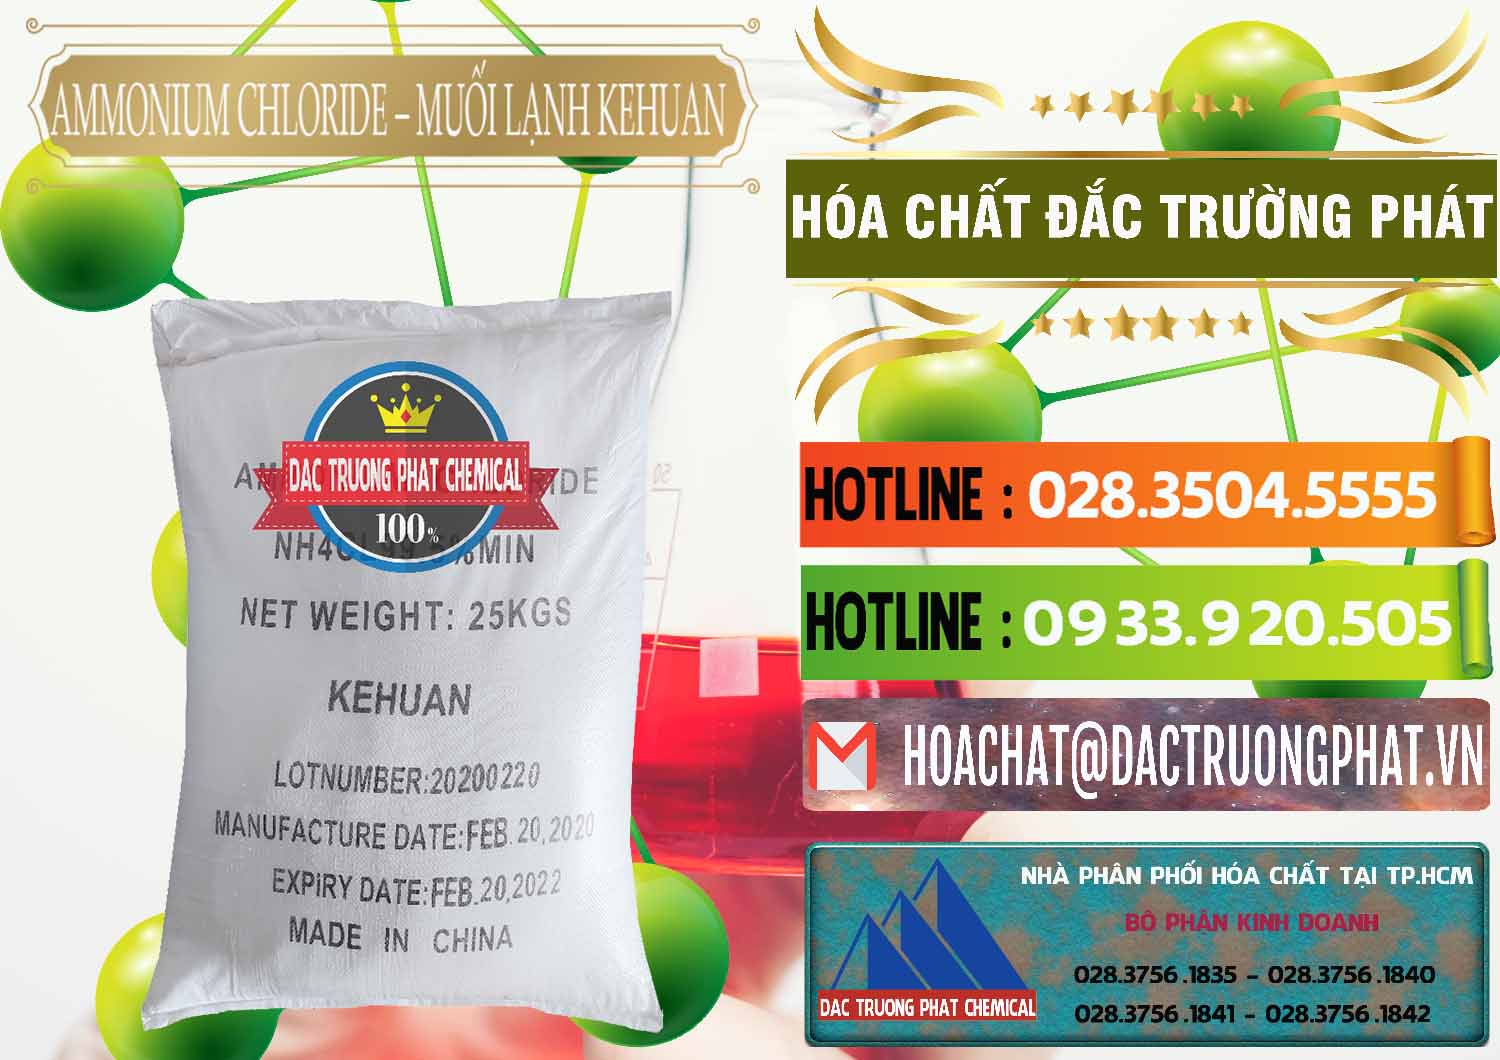 Nơi chuyên kinh doanh và bán Ammonium Chloride – NH4CL Muối Lạnh Kehuan Trung Quốc China - 0022 - Nhà phân phối ( kinh doanh ) hóa chất tại TP.HCM - cungcaphoachat.com.vn